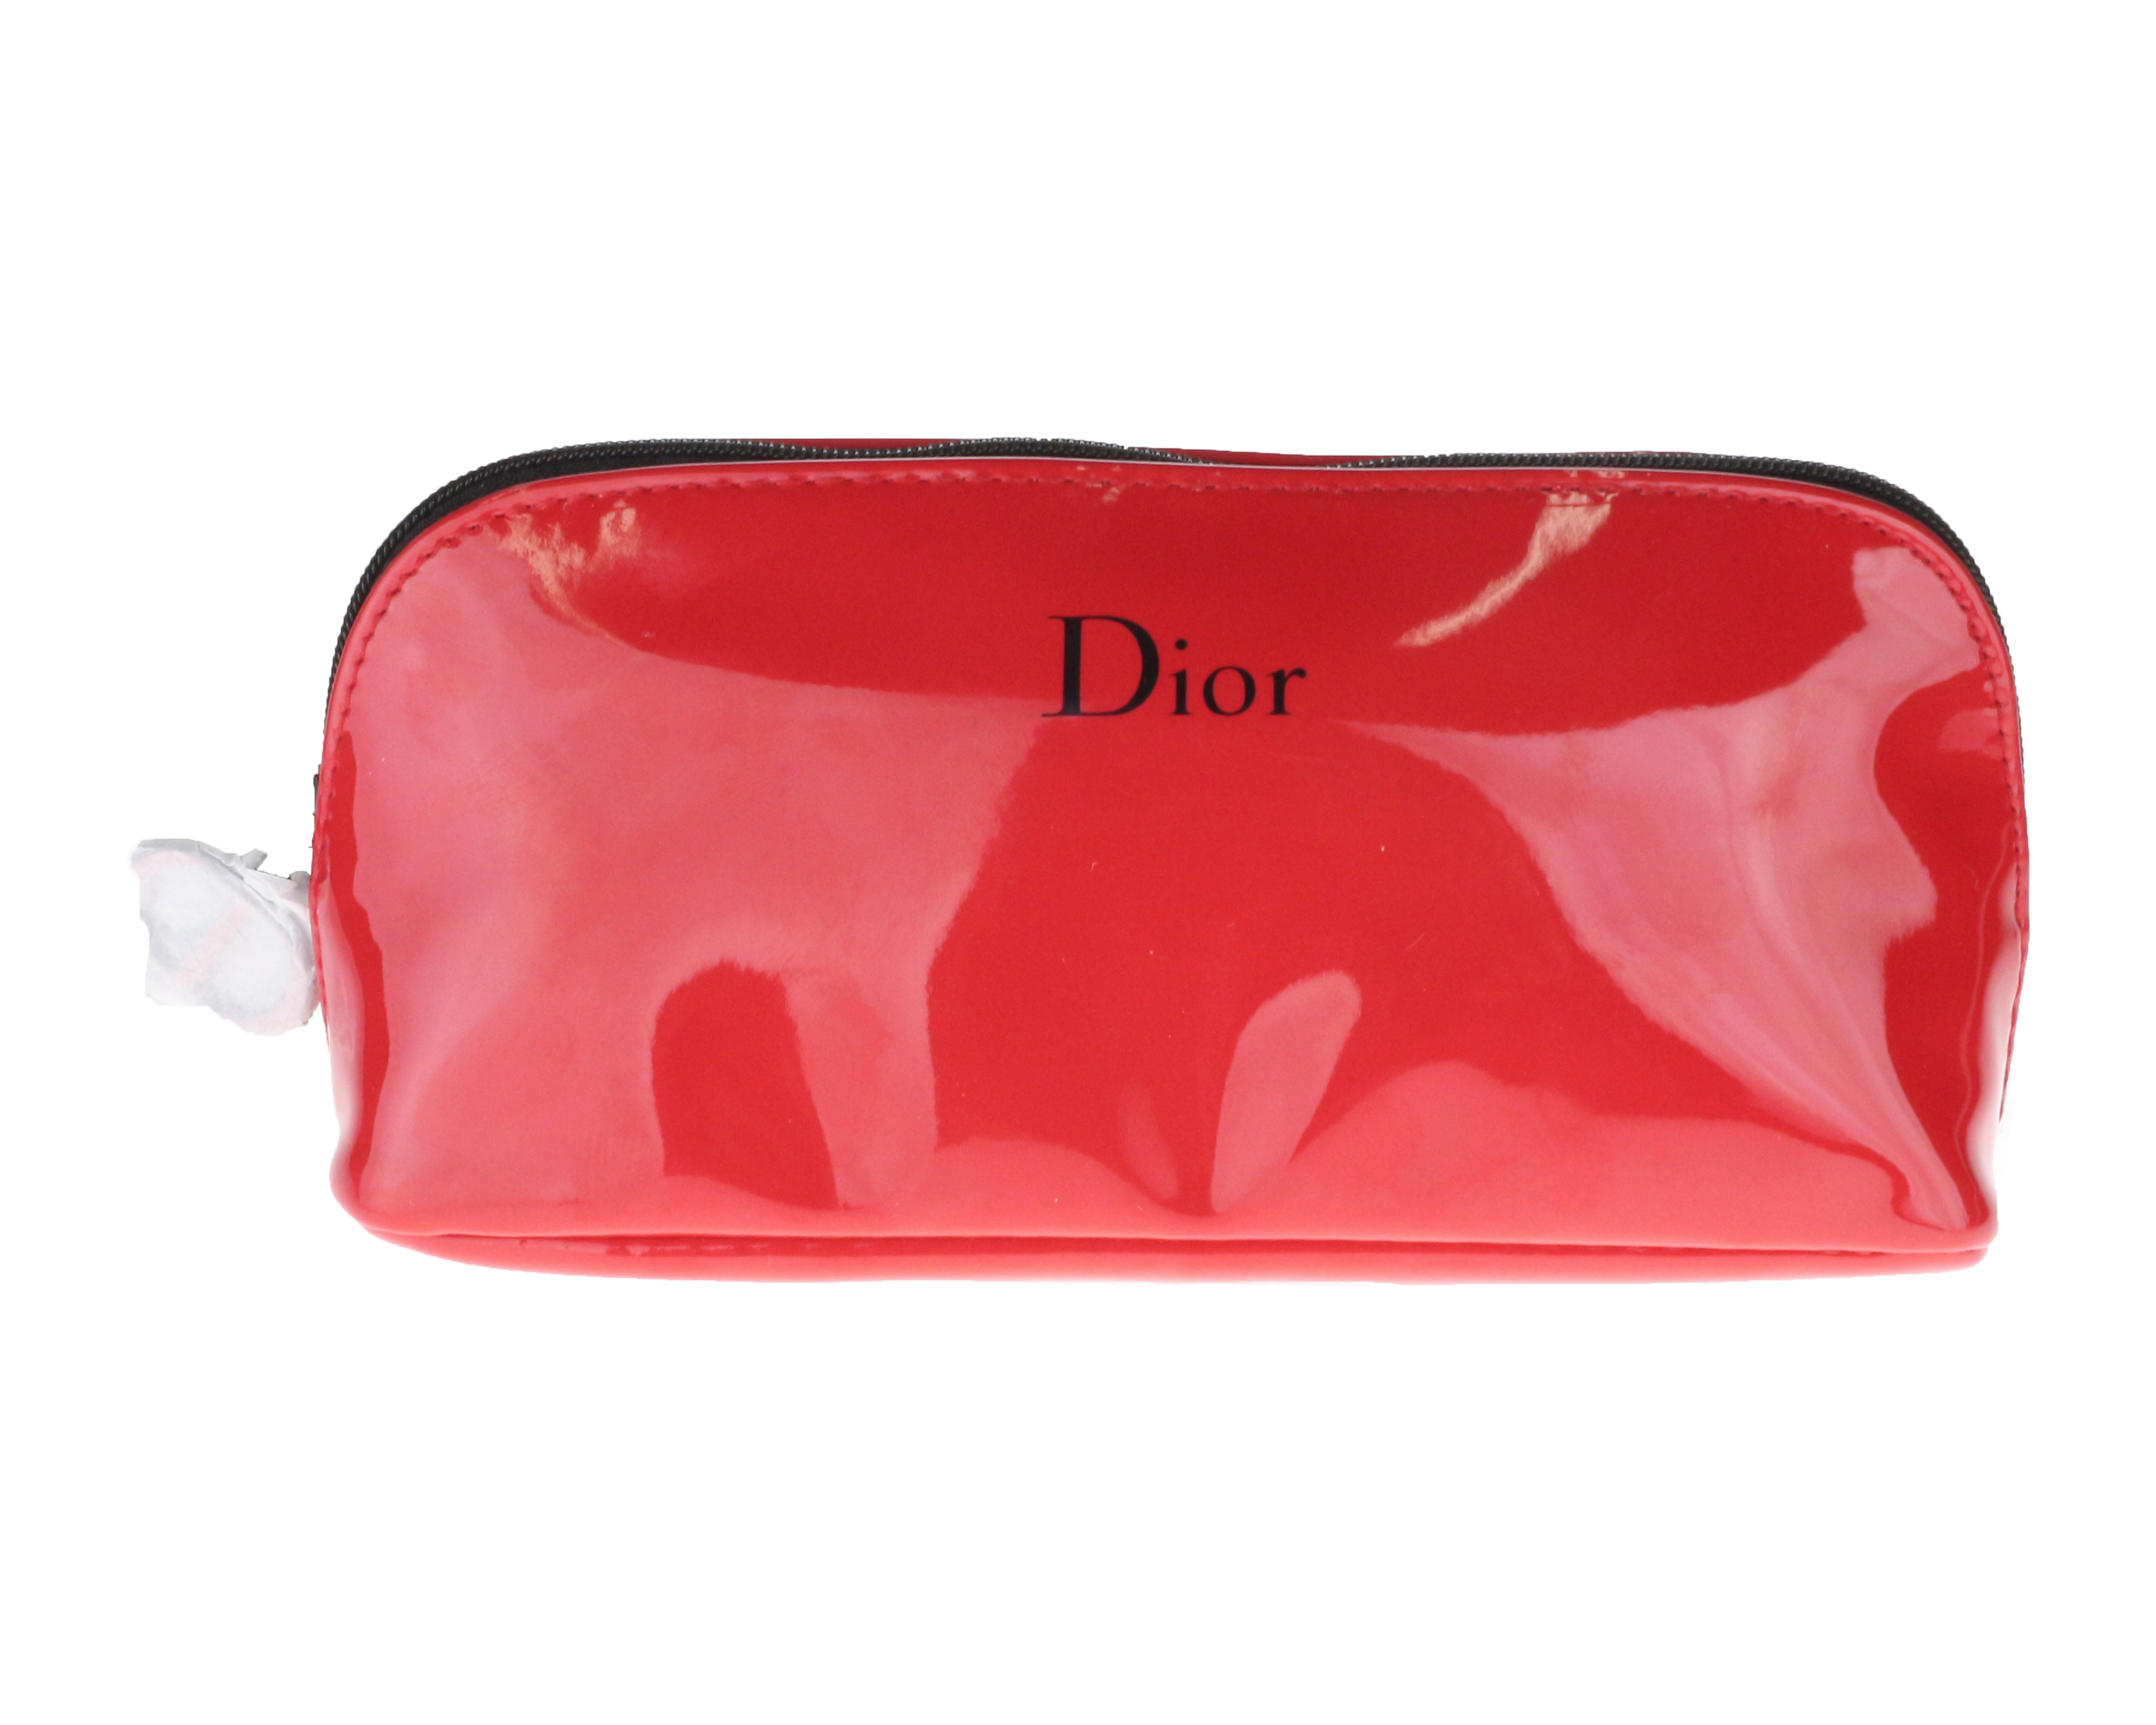 dior cosmetic bag